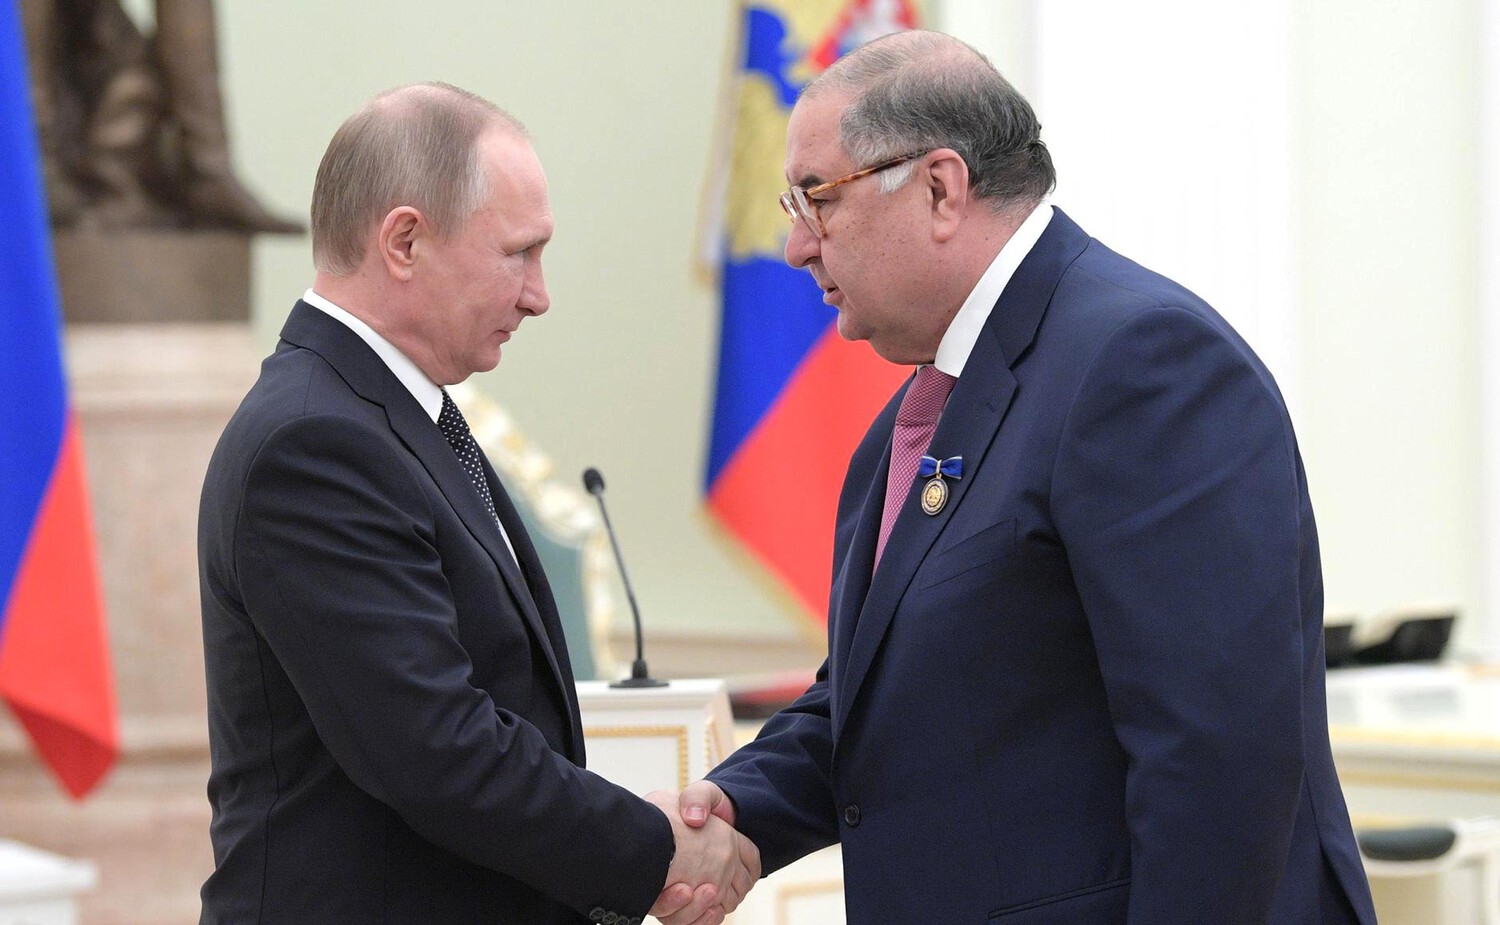 Oesmanov en Poetin schudden elkaar de hand.